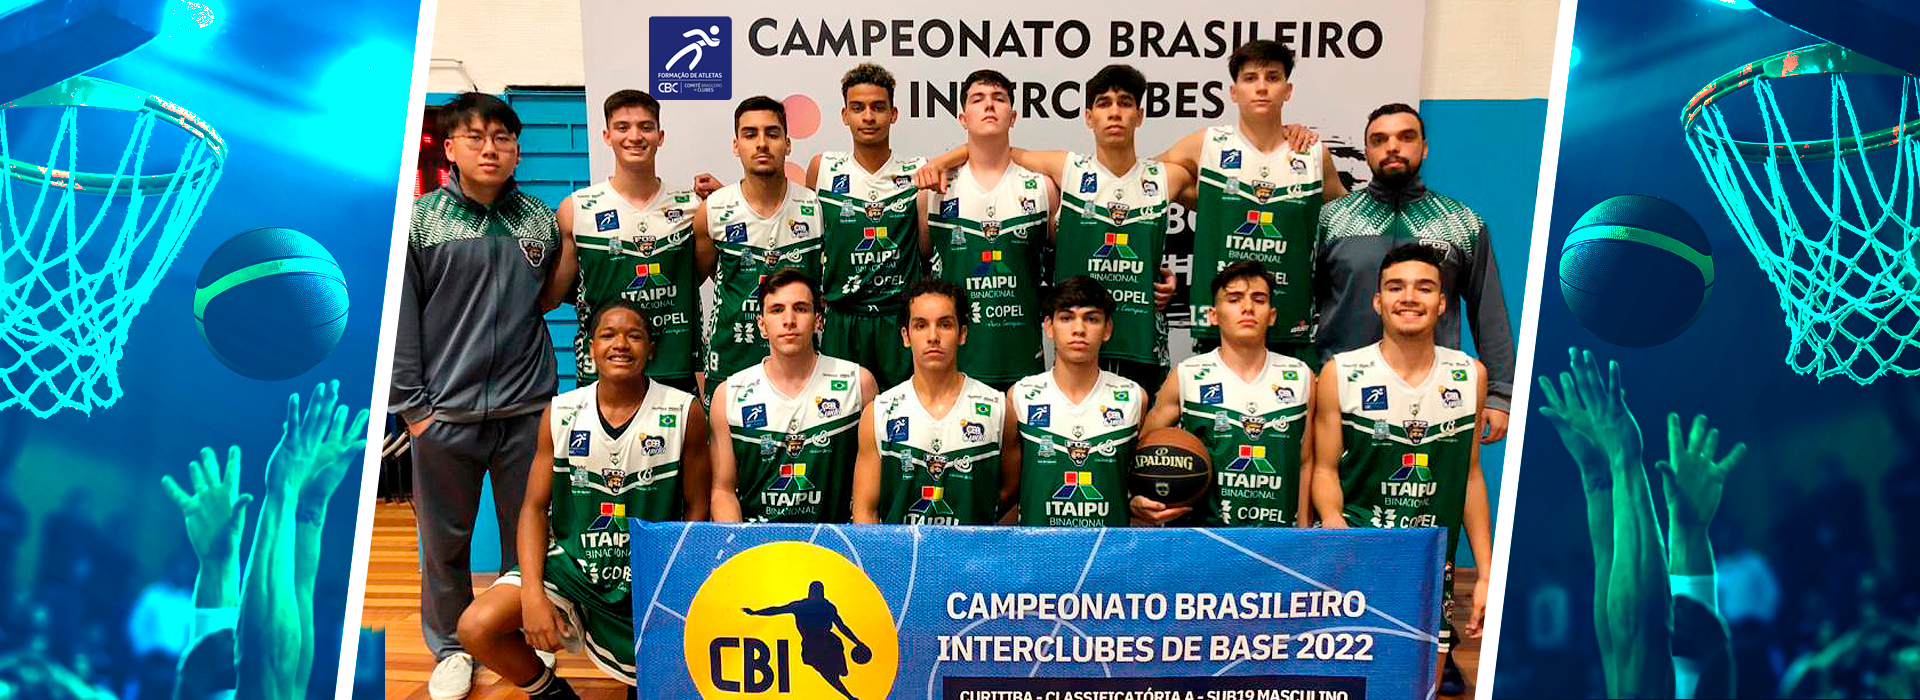 Associação de Basquete de Foz do Iguaçu-PR vence o CBI® de Basquetebol Sub 19 Masculino - Classificatória A